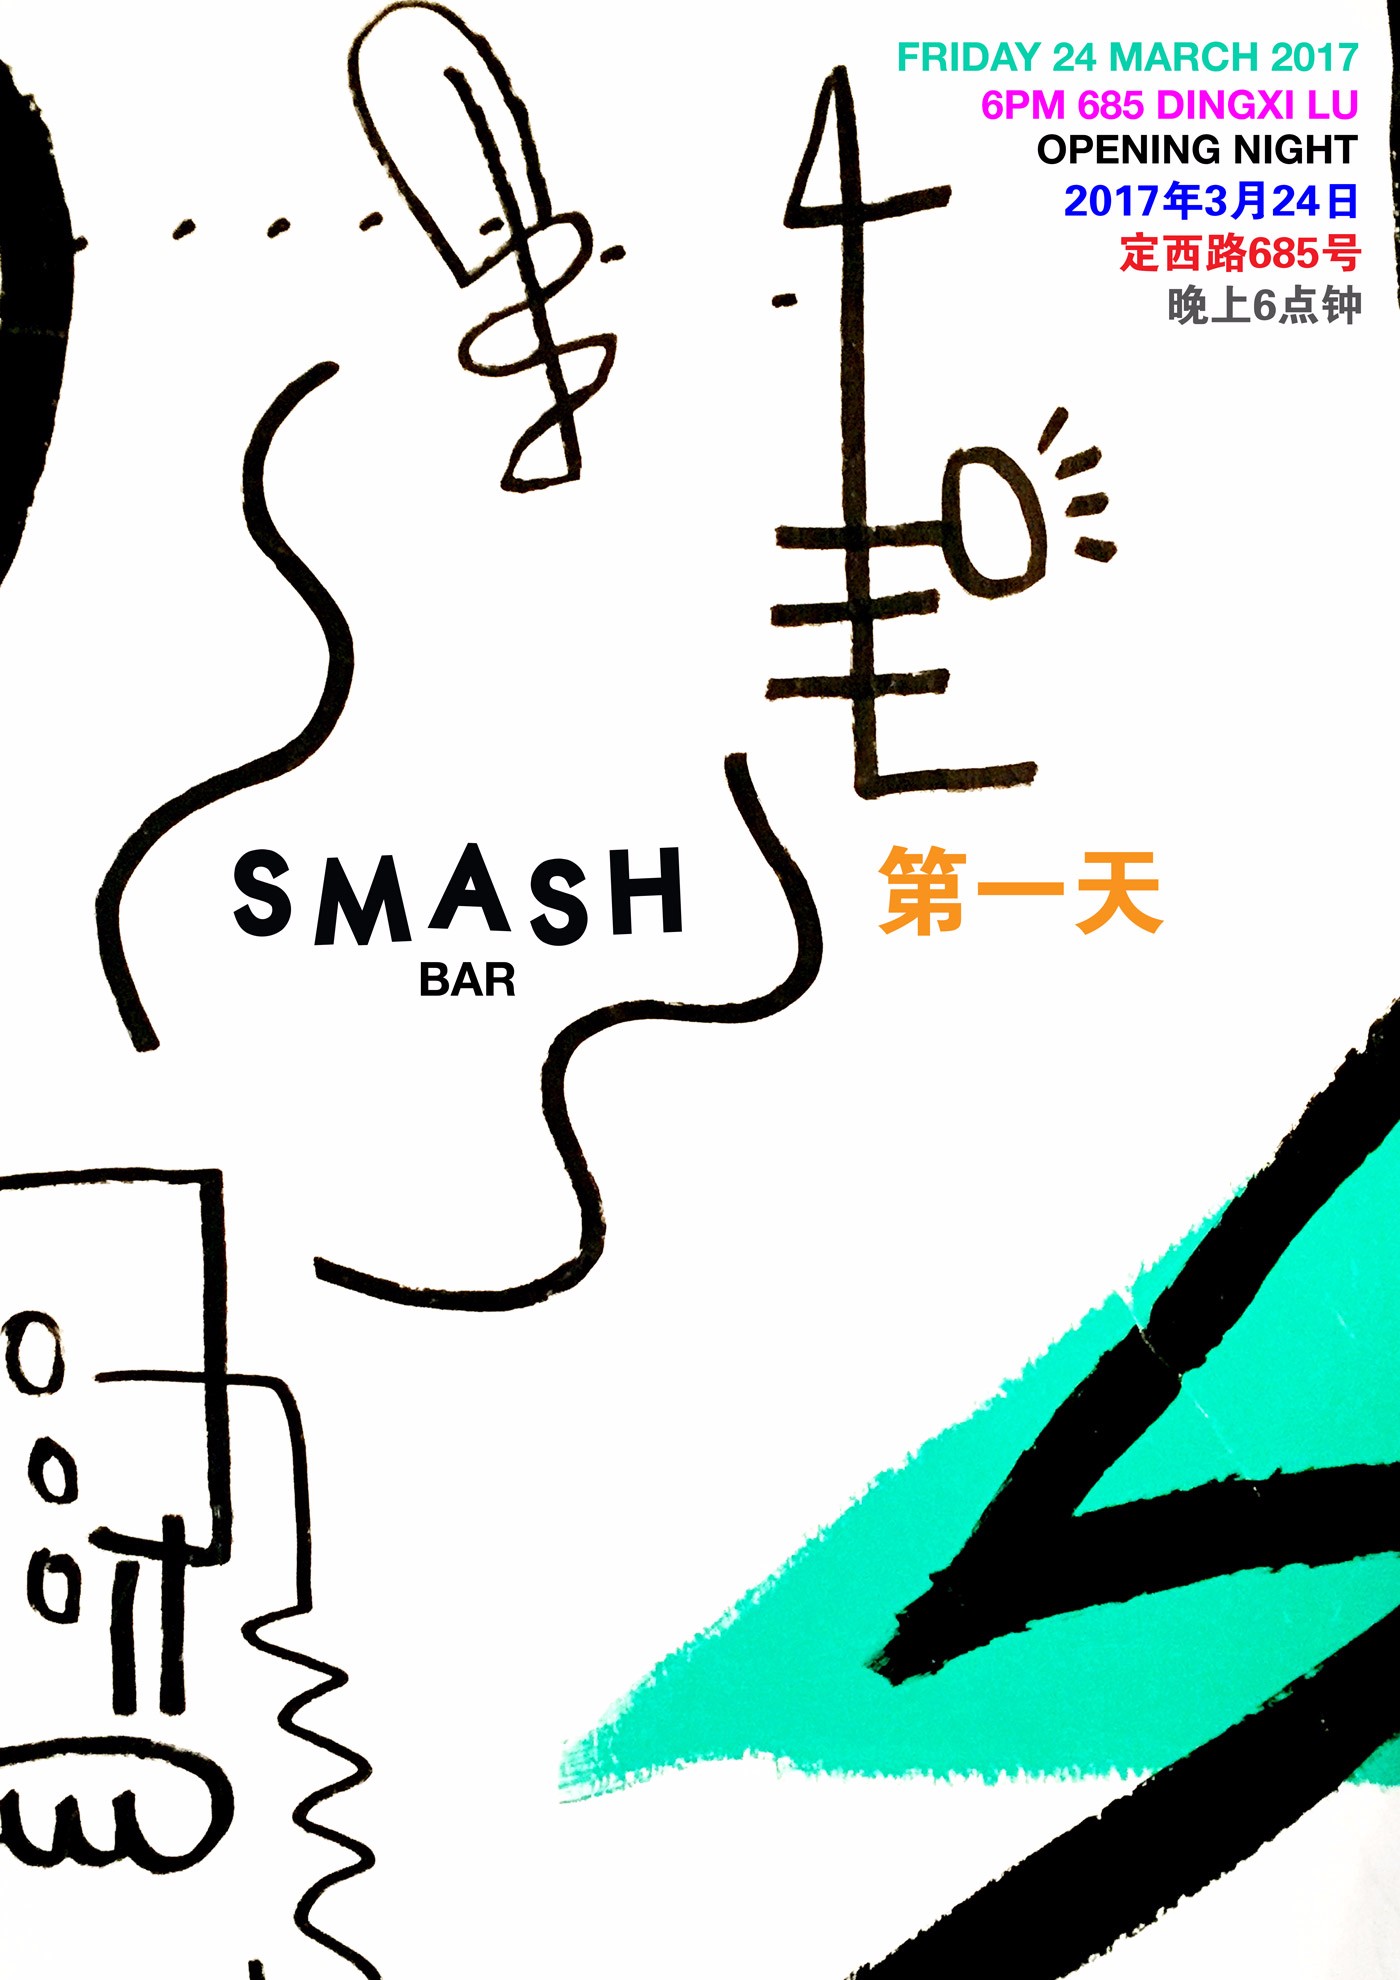 Mar 24: Smash Bar Opening